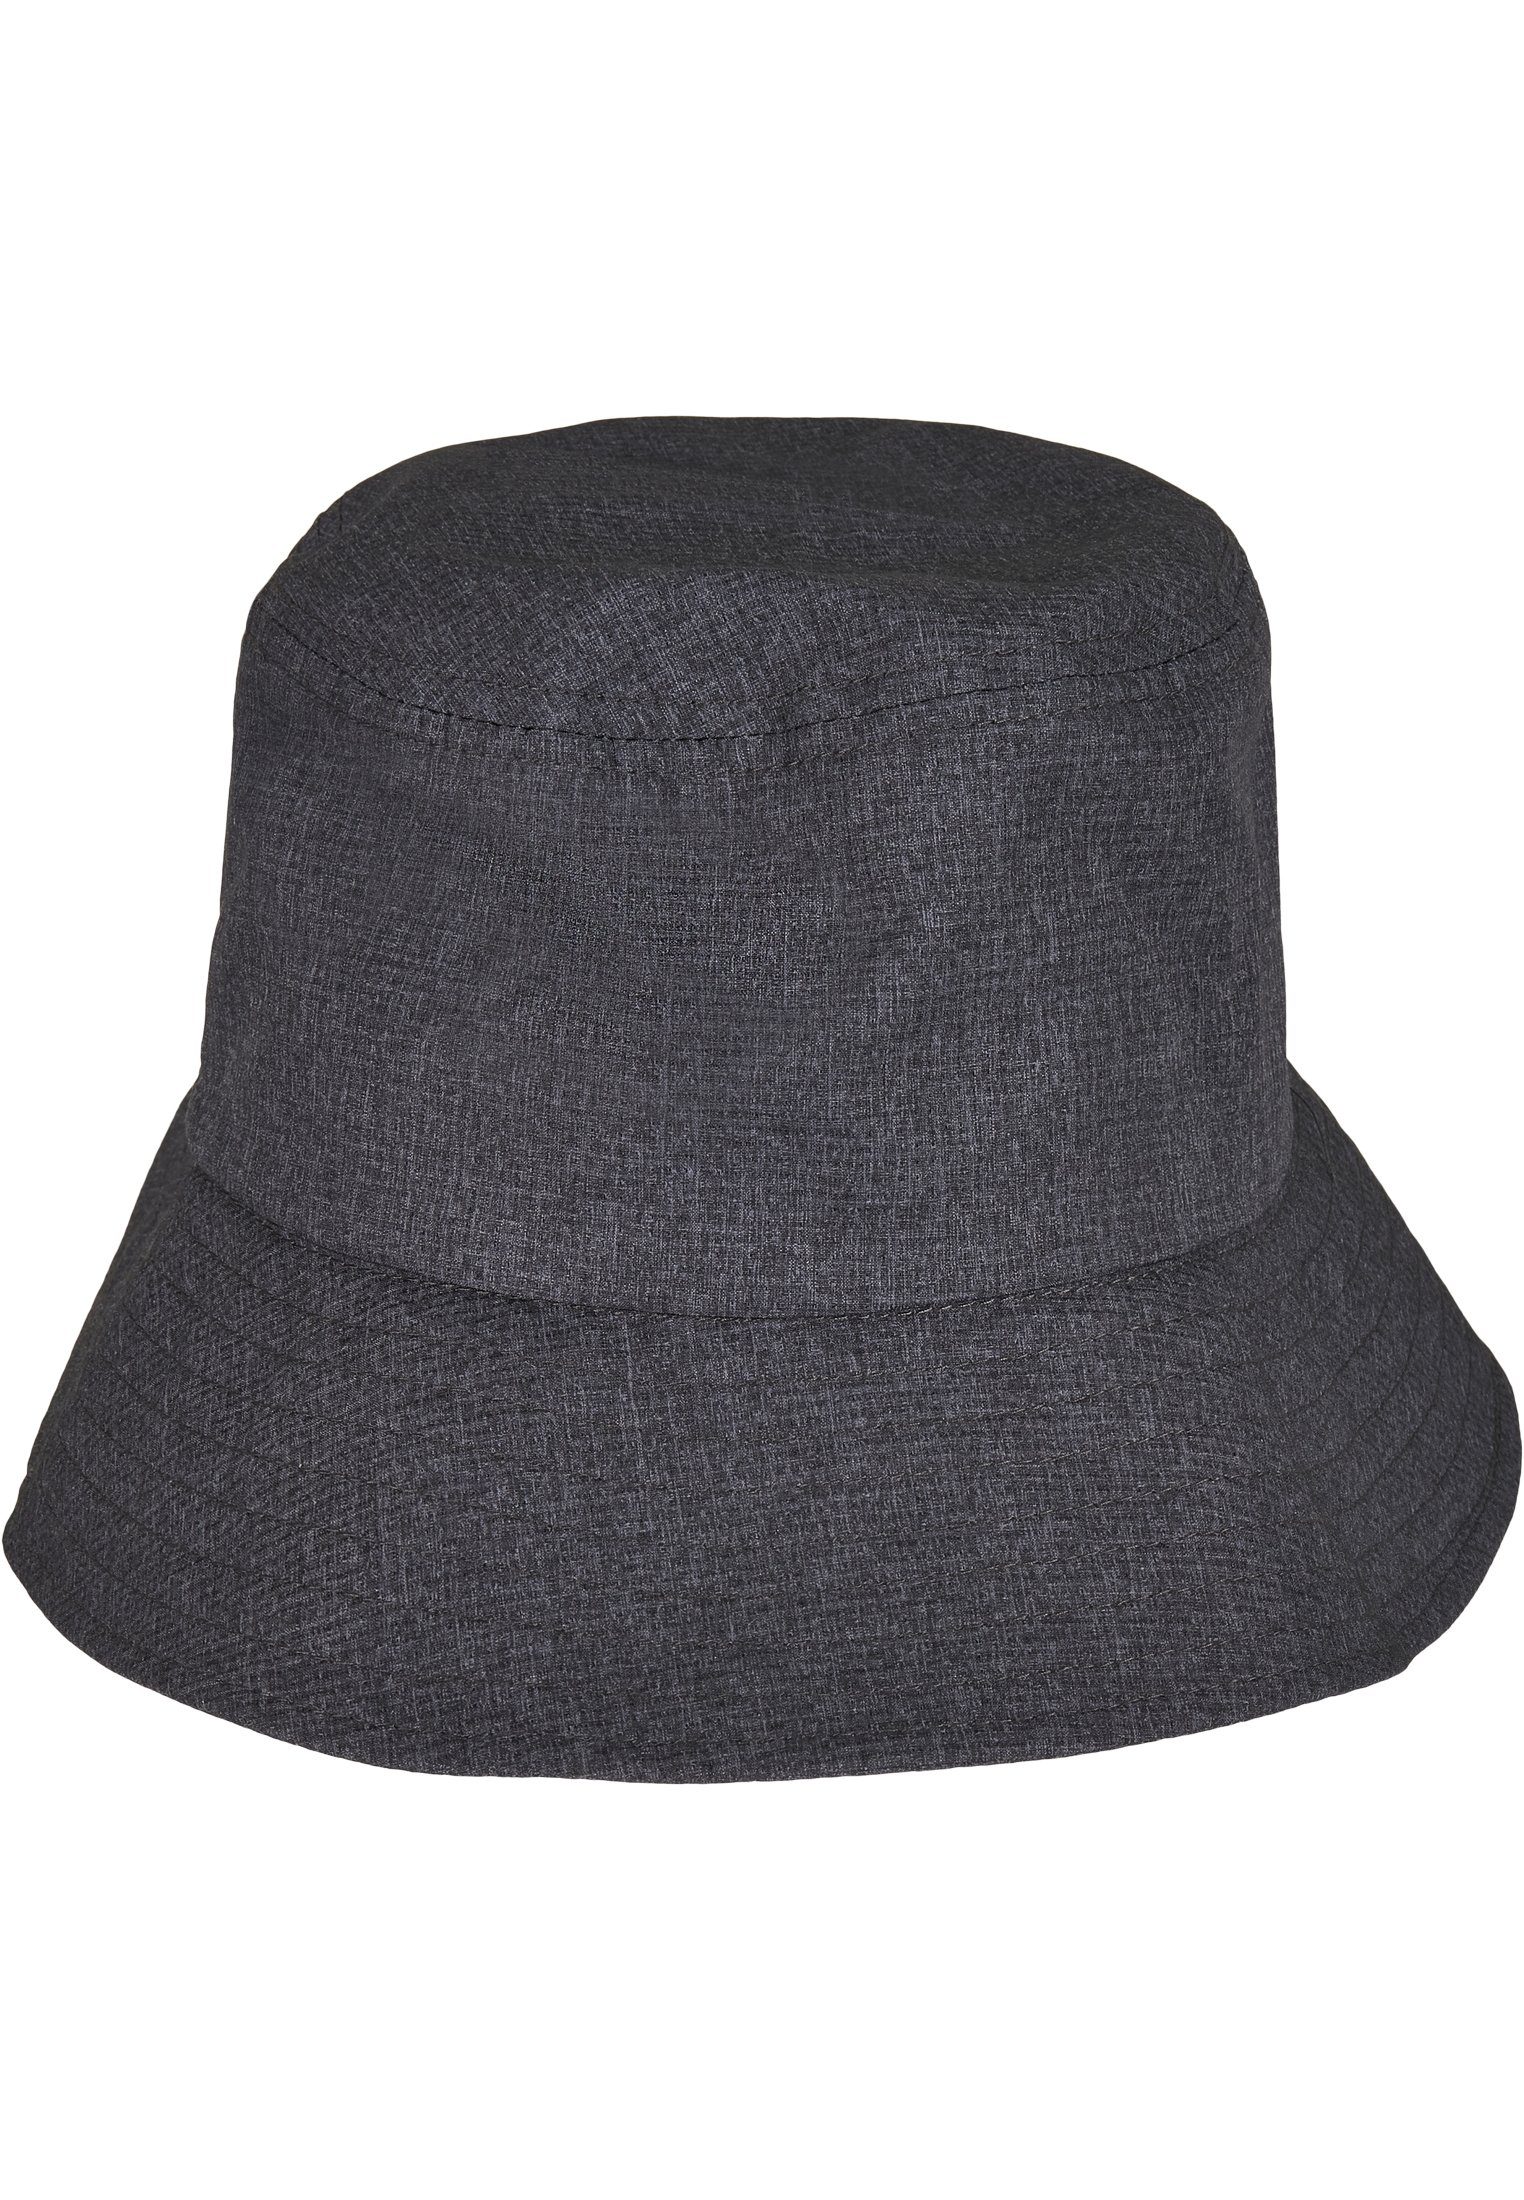 Cap Hat Flexfit Bucket Adjustable Flexfit Hat Bucket Flex heathergrey